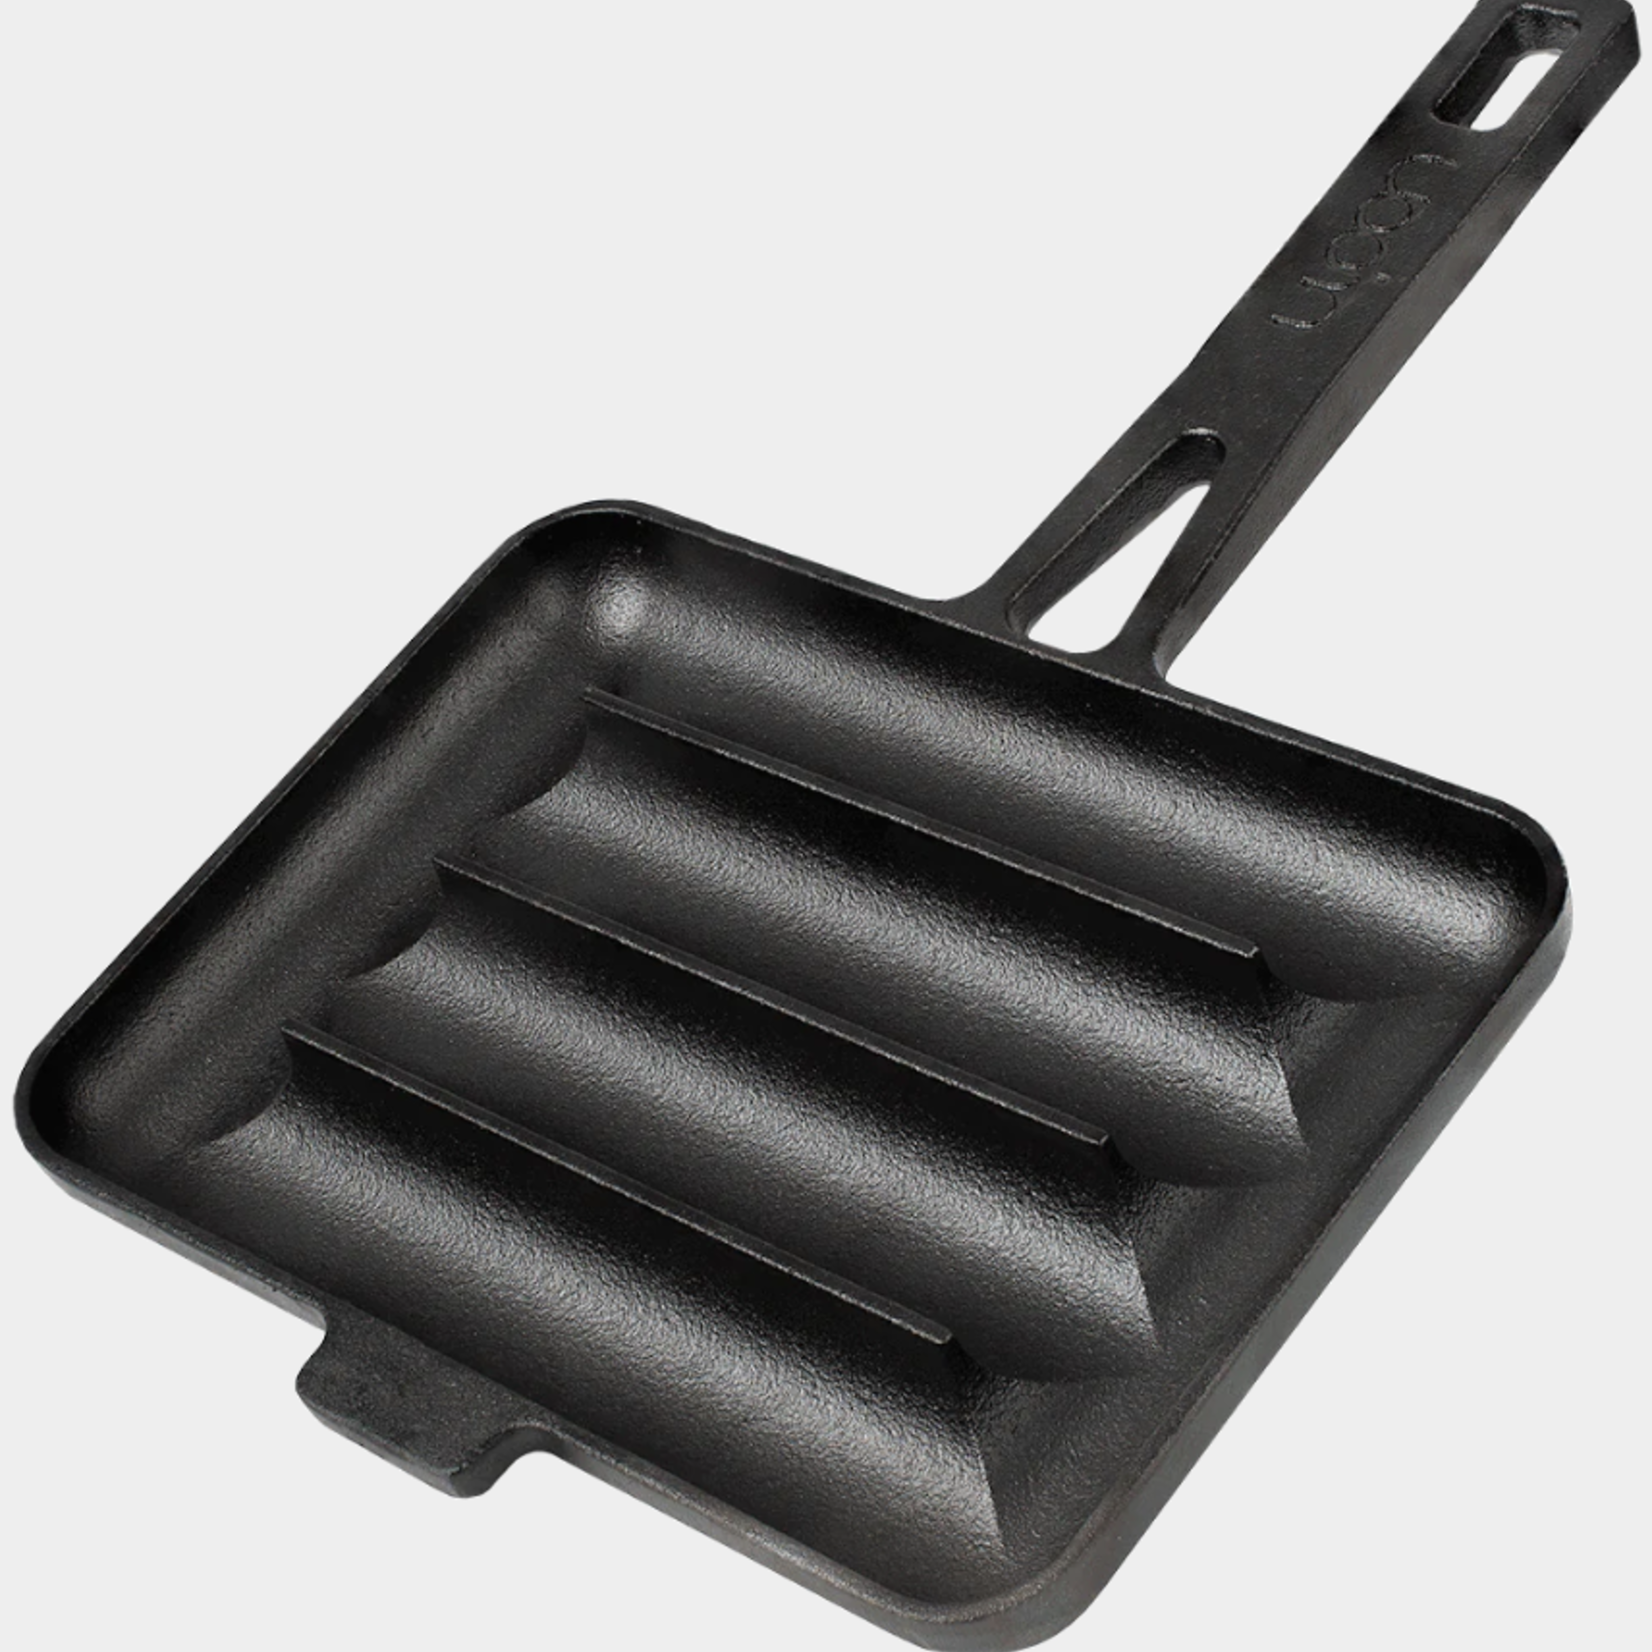 UPAN UPAN Cast Iron Sausage Pan